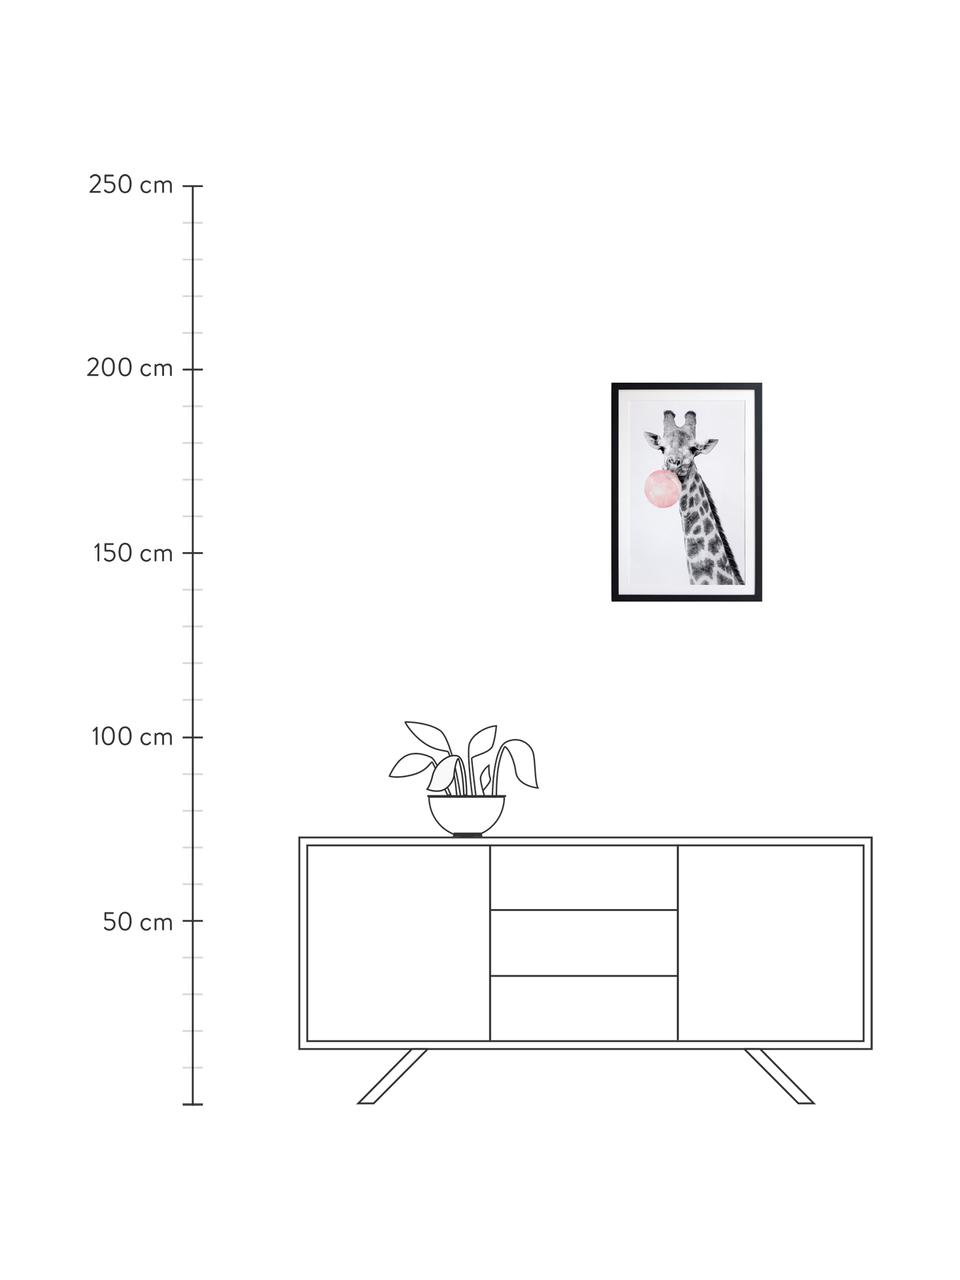 Impression numérique encadrée Giraffe, Noir, blanc, rose, larg. 45 x haut. 65 cm